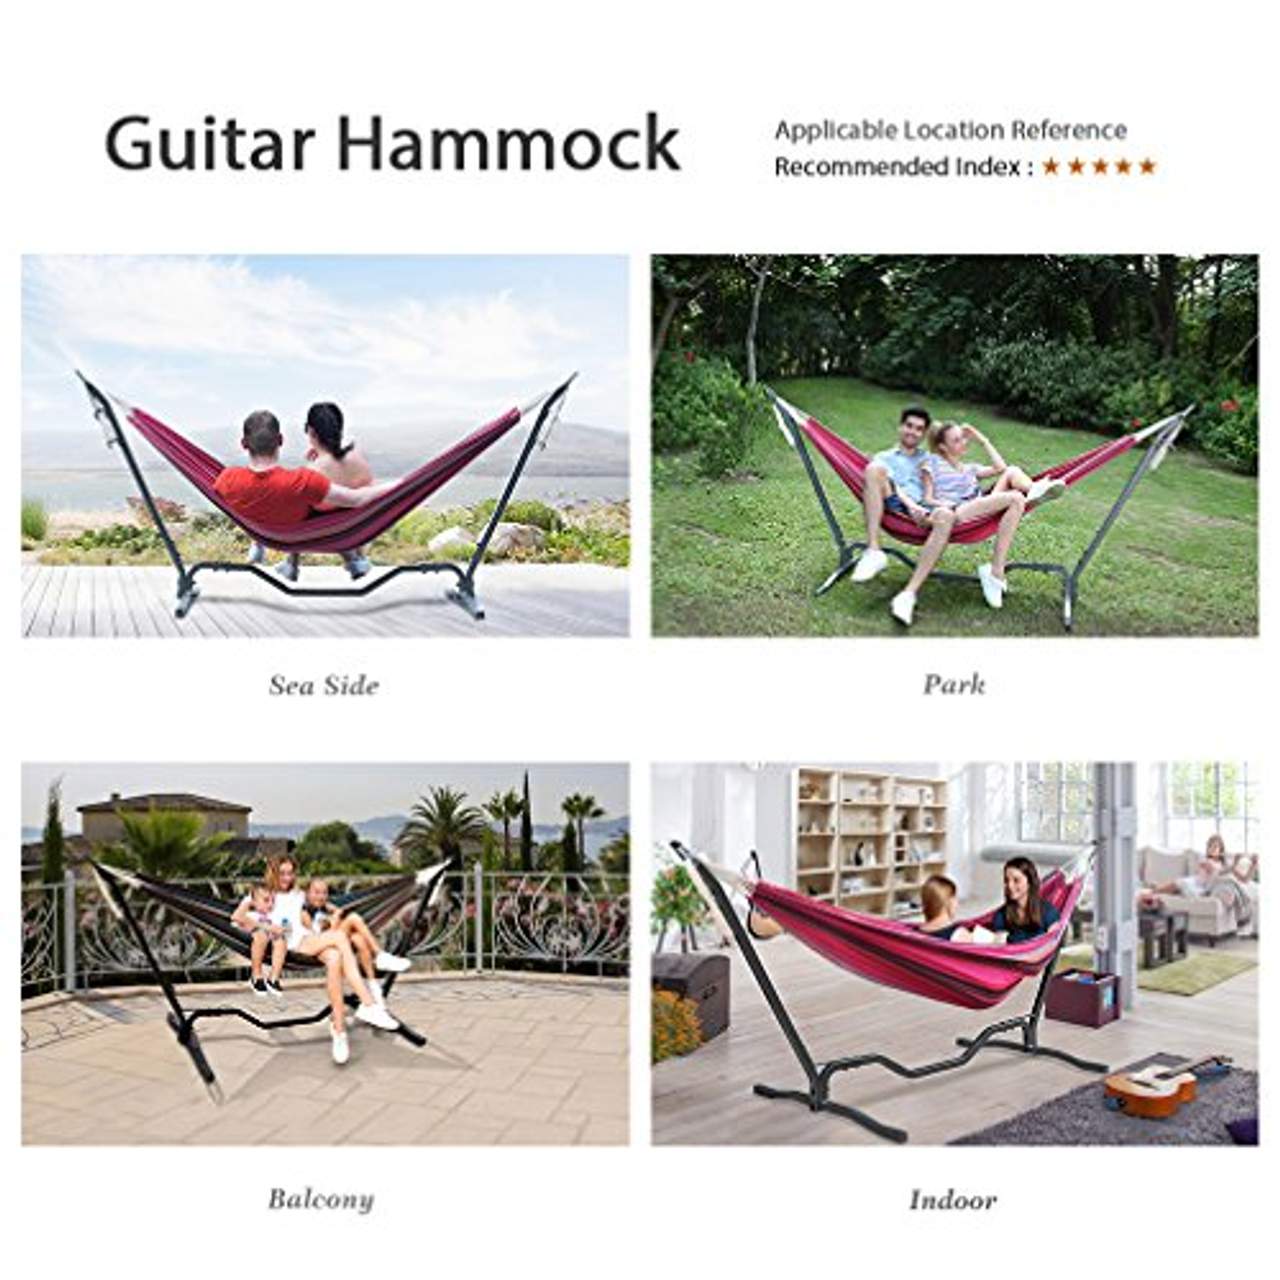 Holifine Gitarre Design 200x150cm TÜV Mehrpersonen Hängematte Hammock